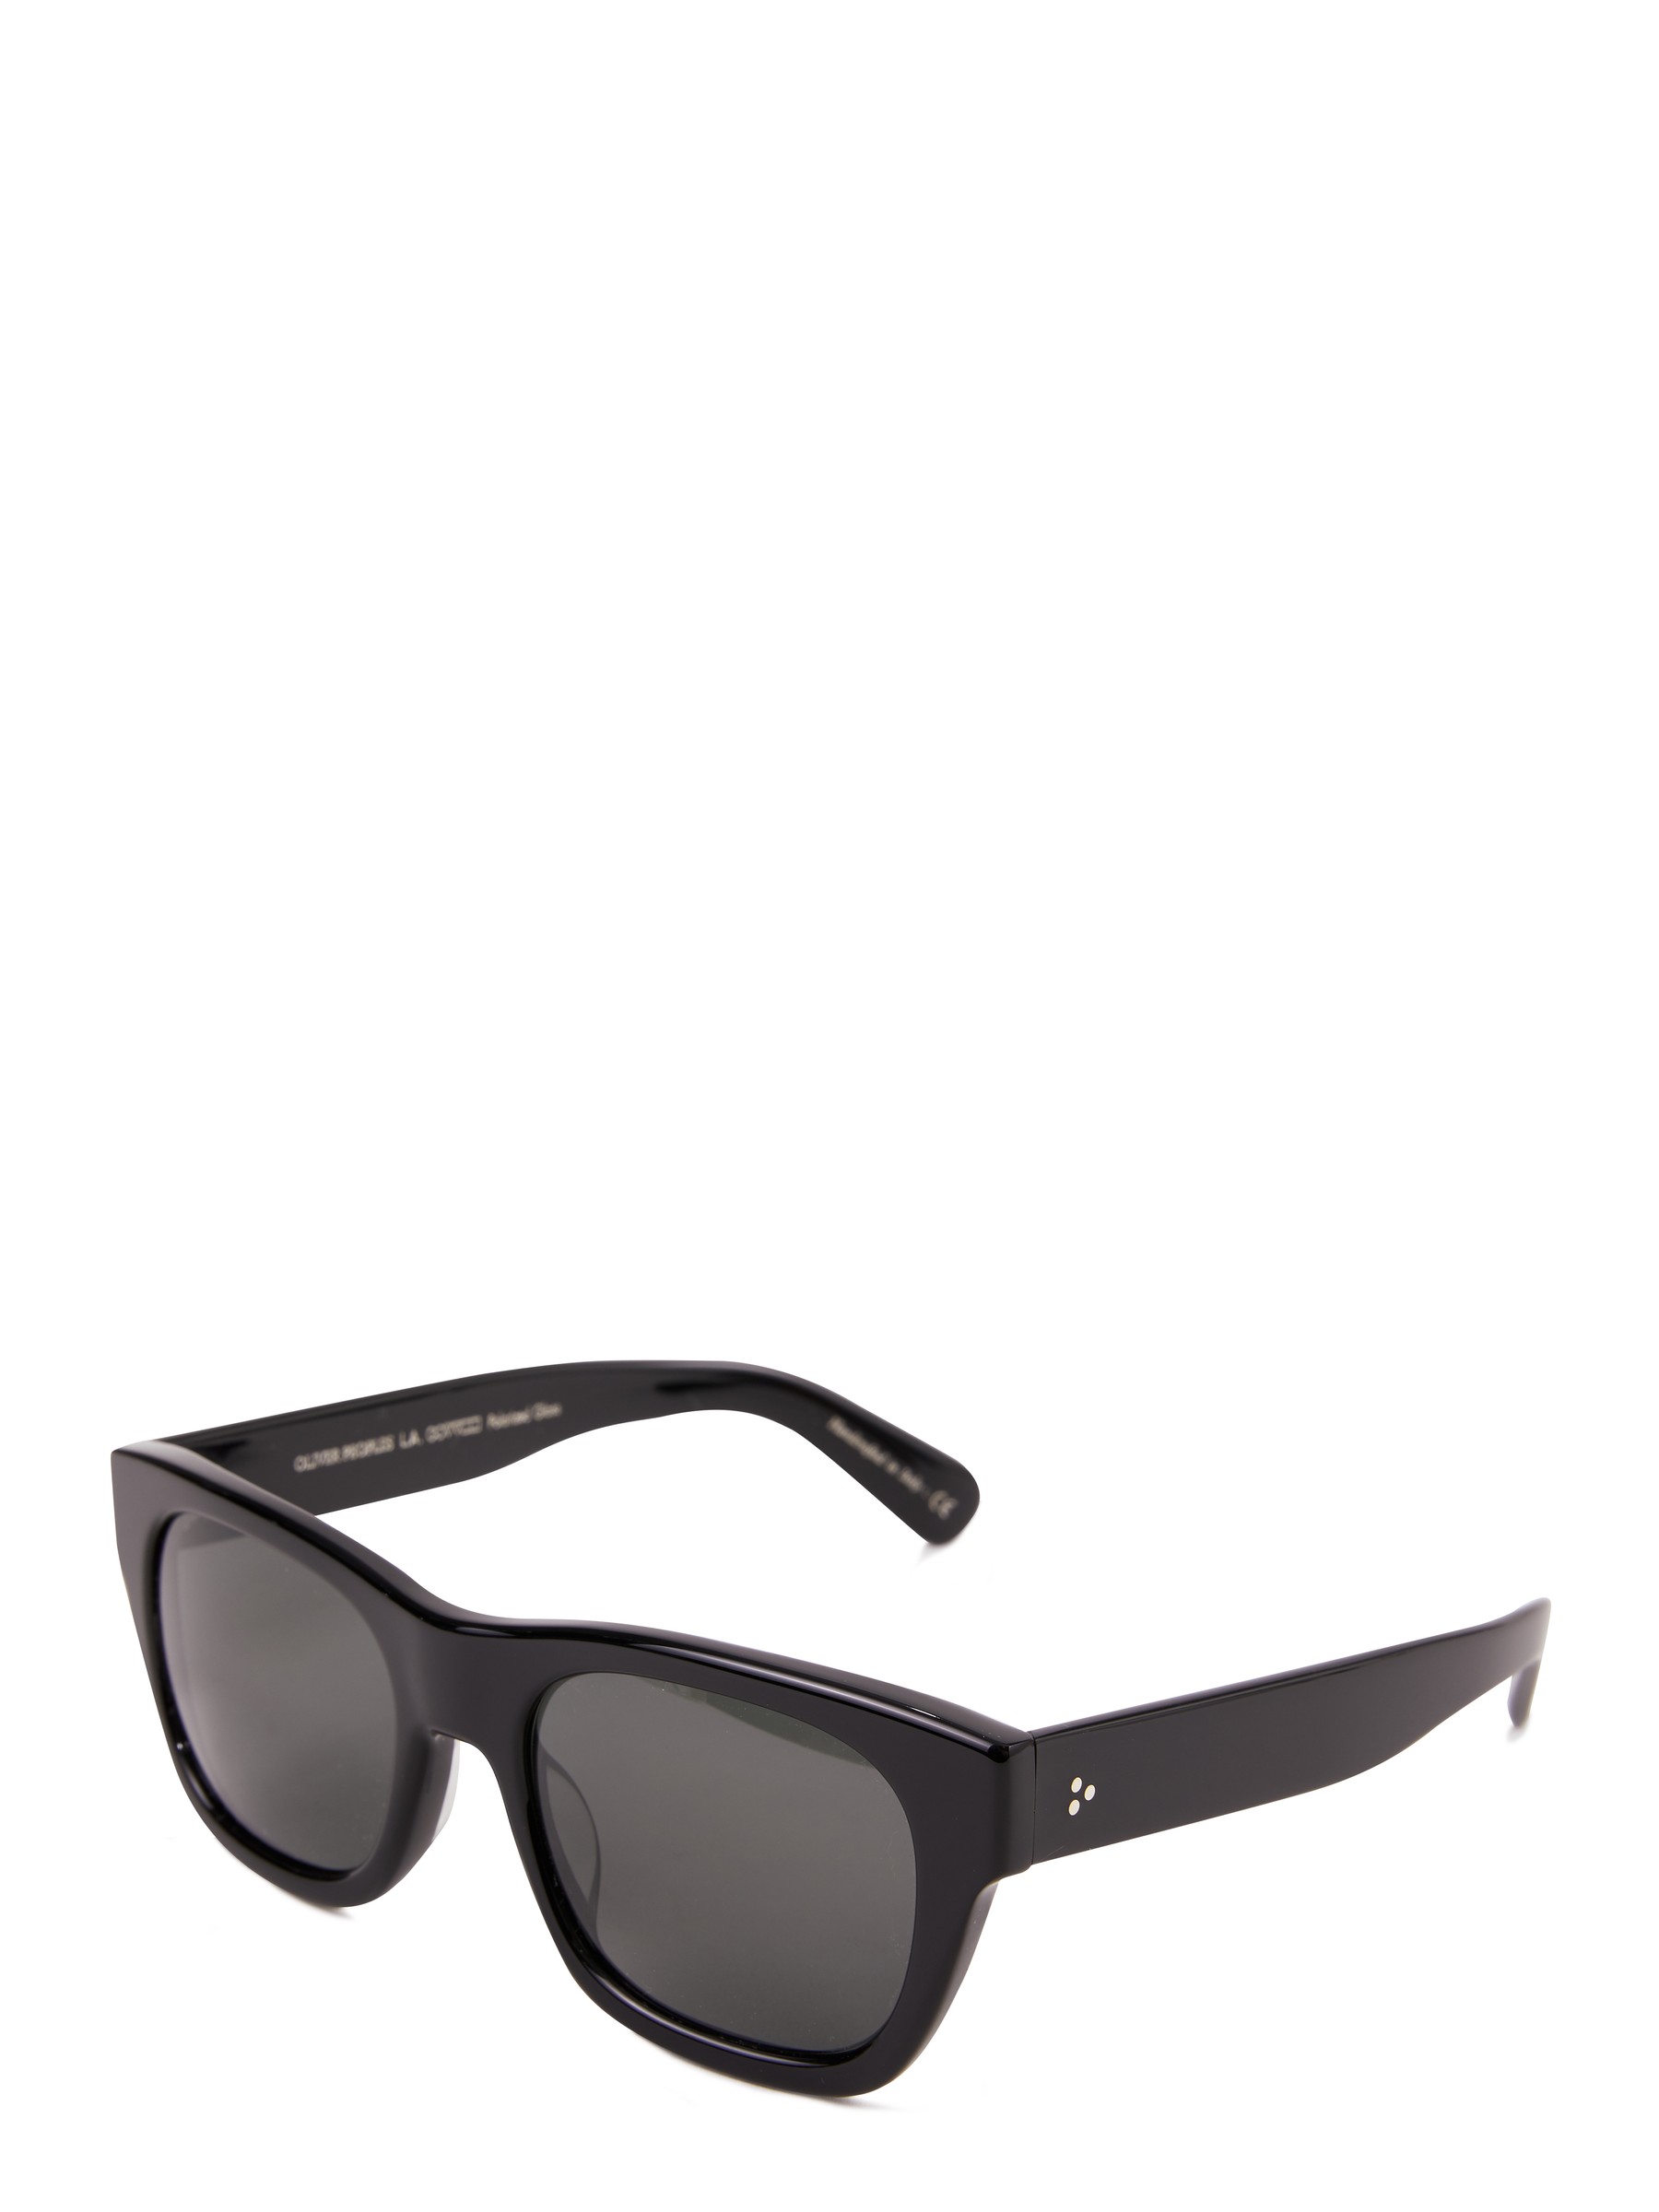 Oliver Peoples Sunglasses 'Keenan' Black | Sunglasses